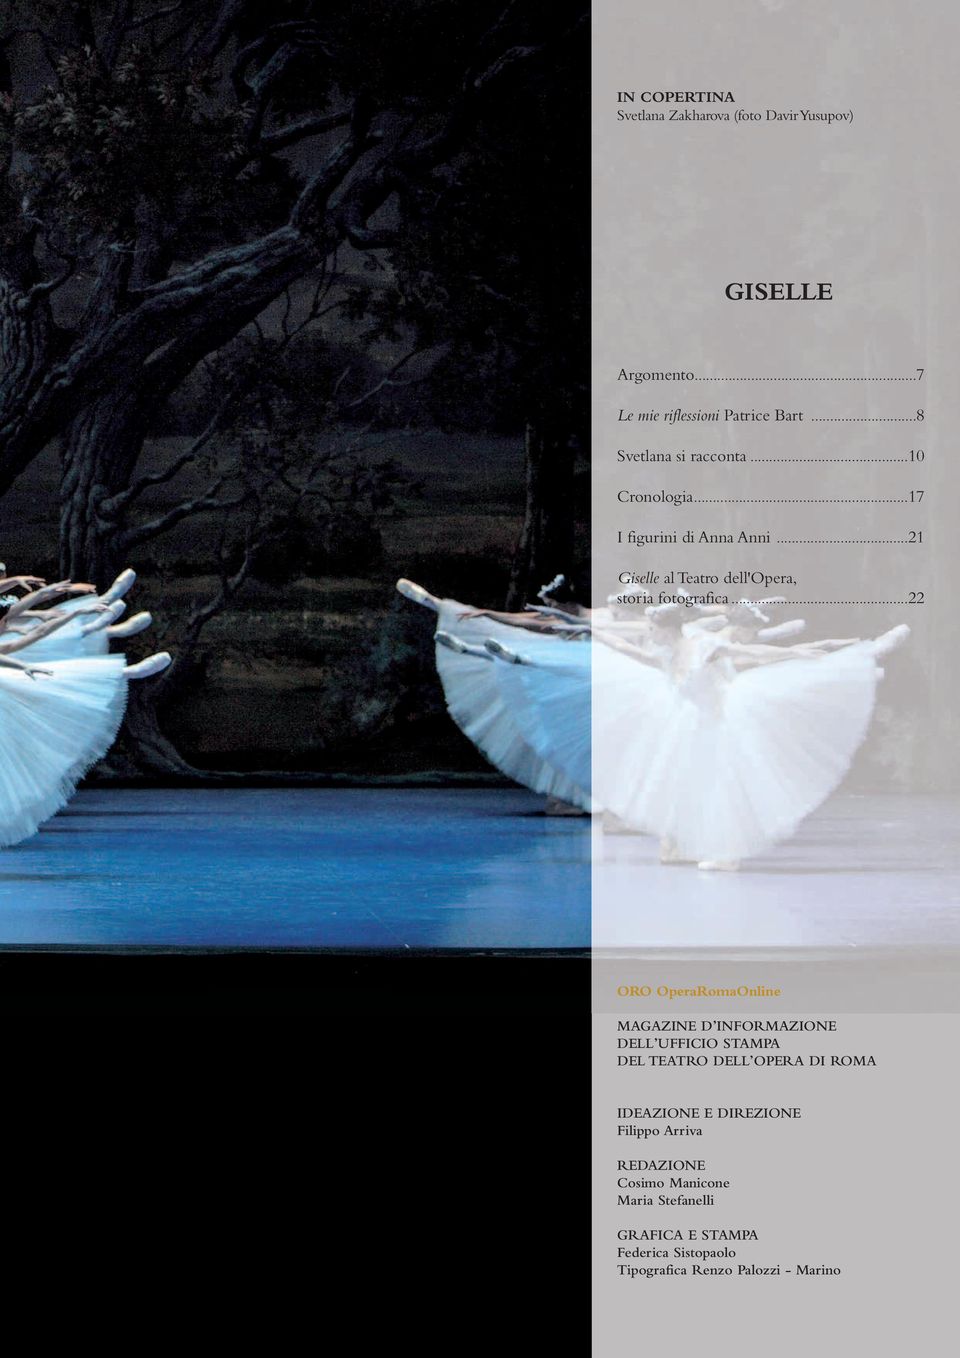 ..21 Giselle al Teatro dell'opera, storia fotografica.